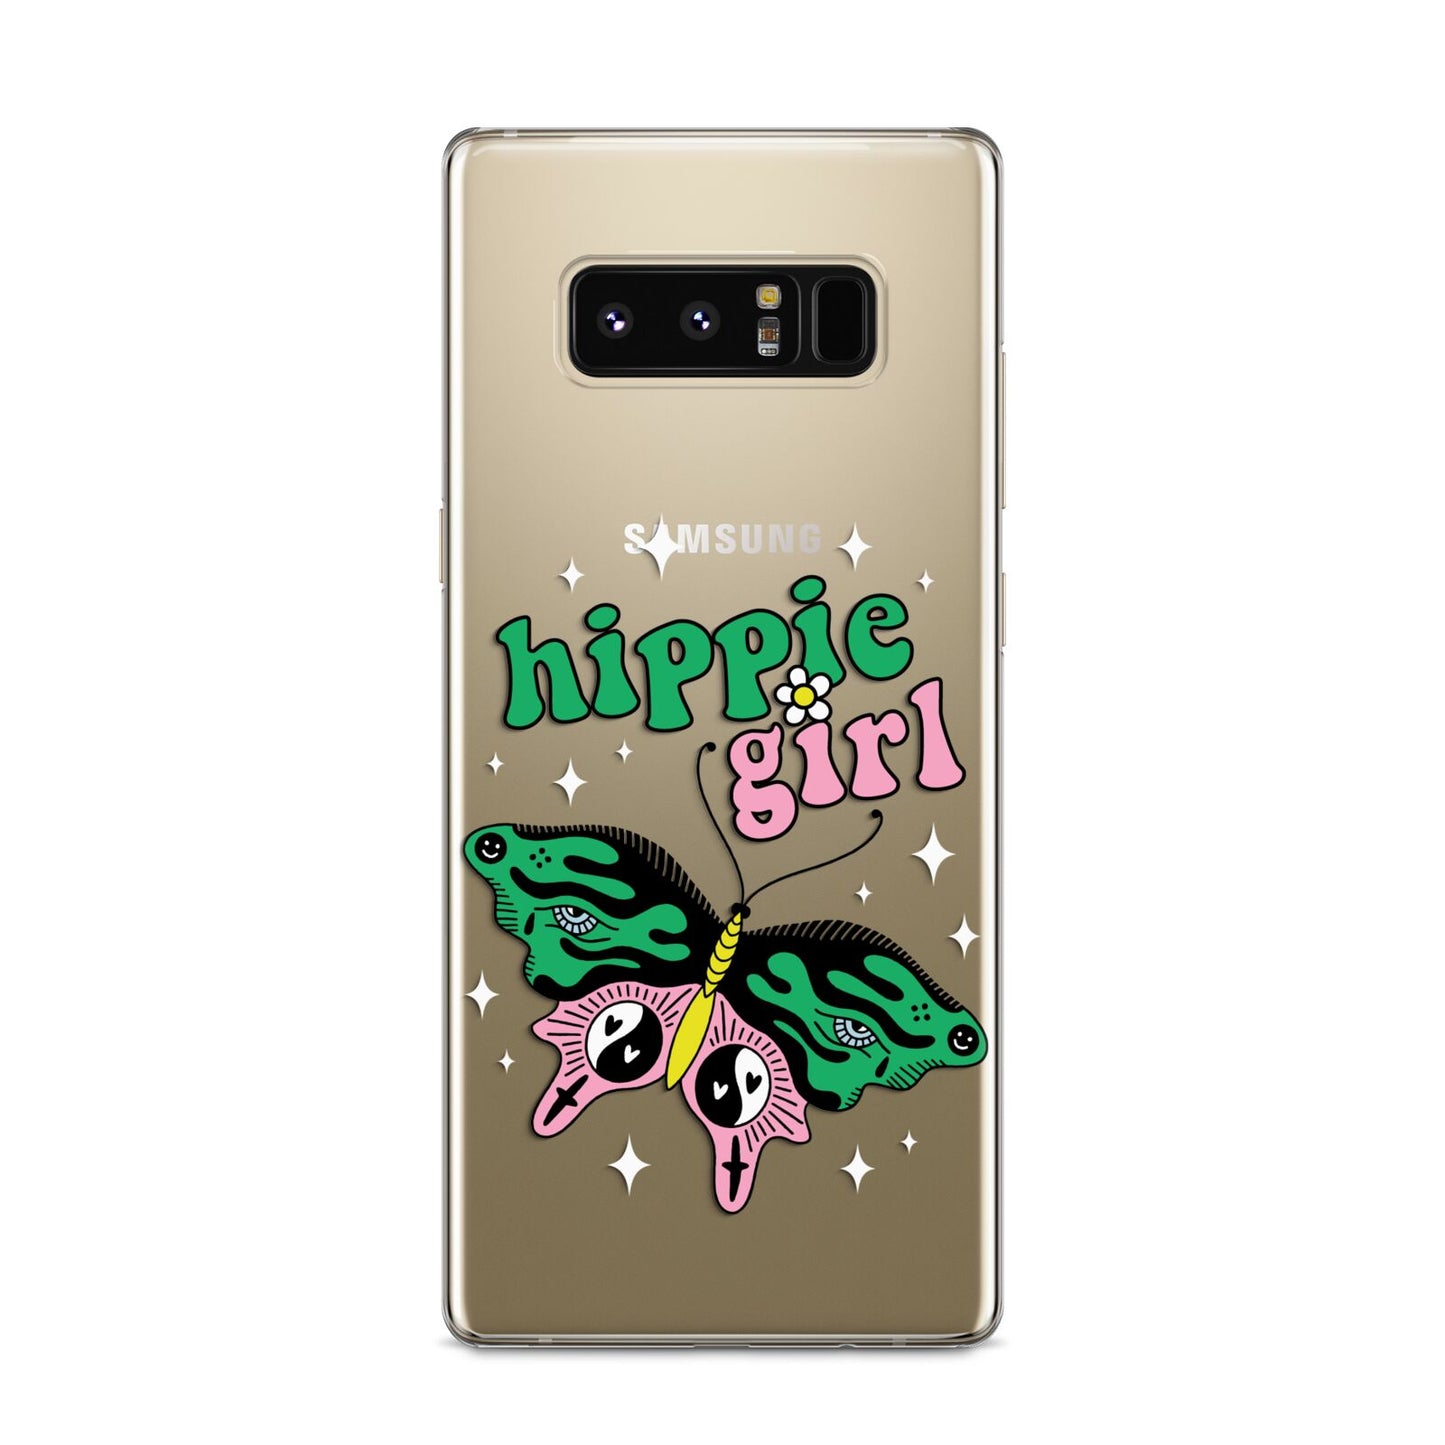 Hippie Girl Samsung Galaxy S8 Case